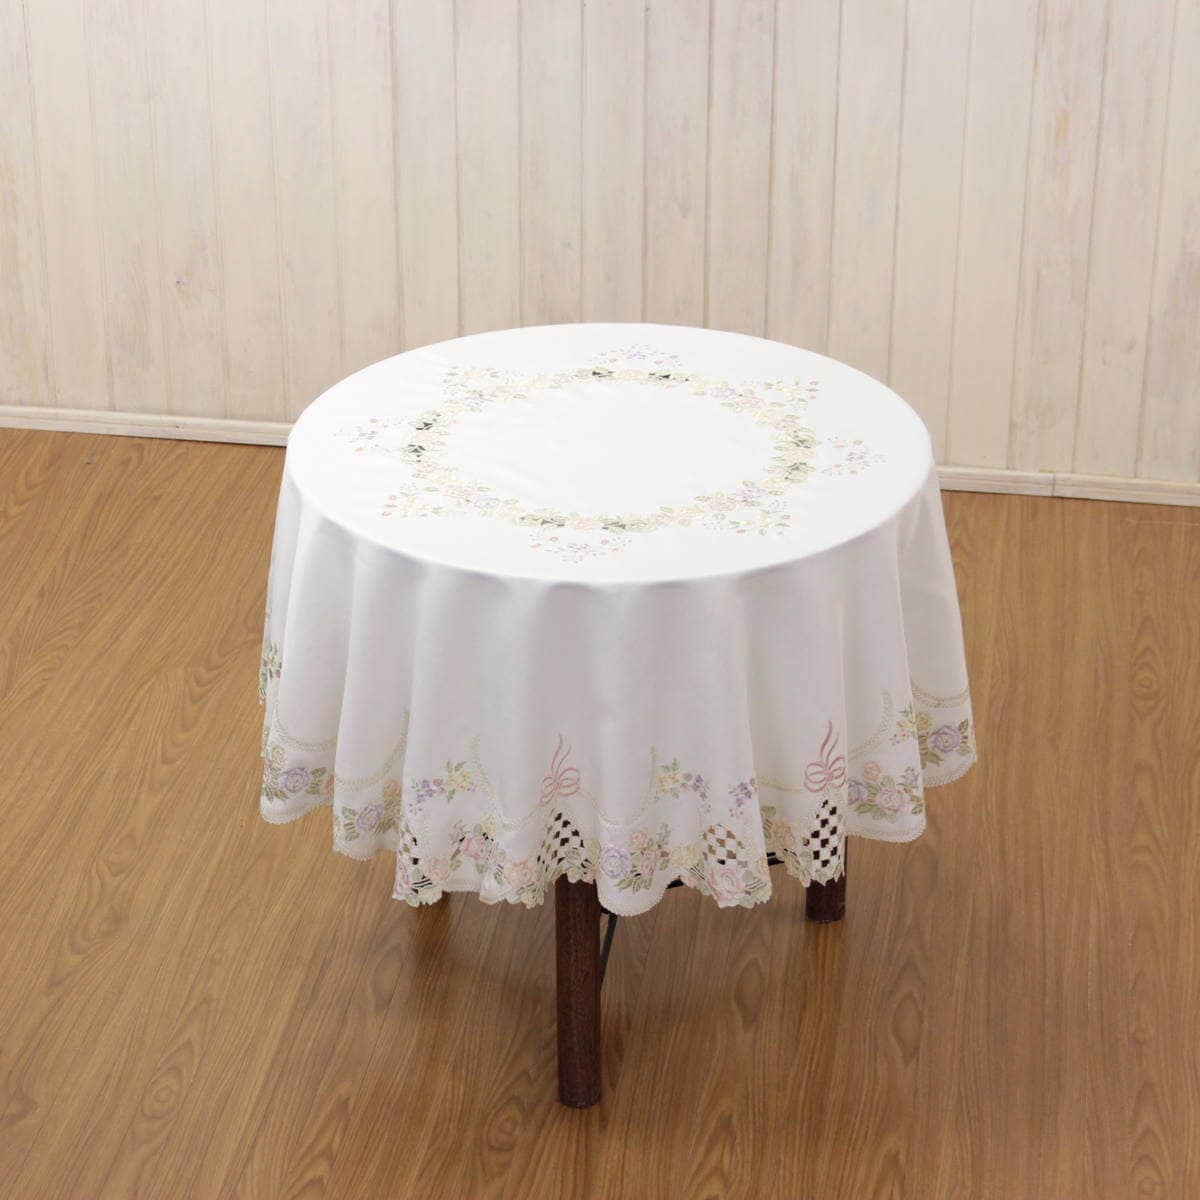 リボン&ローズシリーズのテーブルクロス直径150cmを直径75cmのテーブルに掛けた一例です。